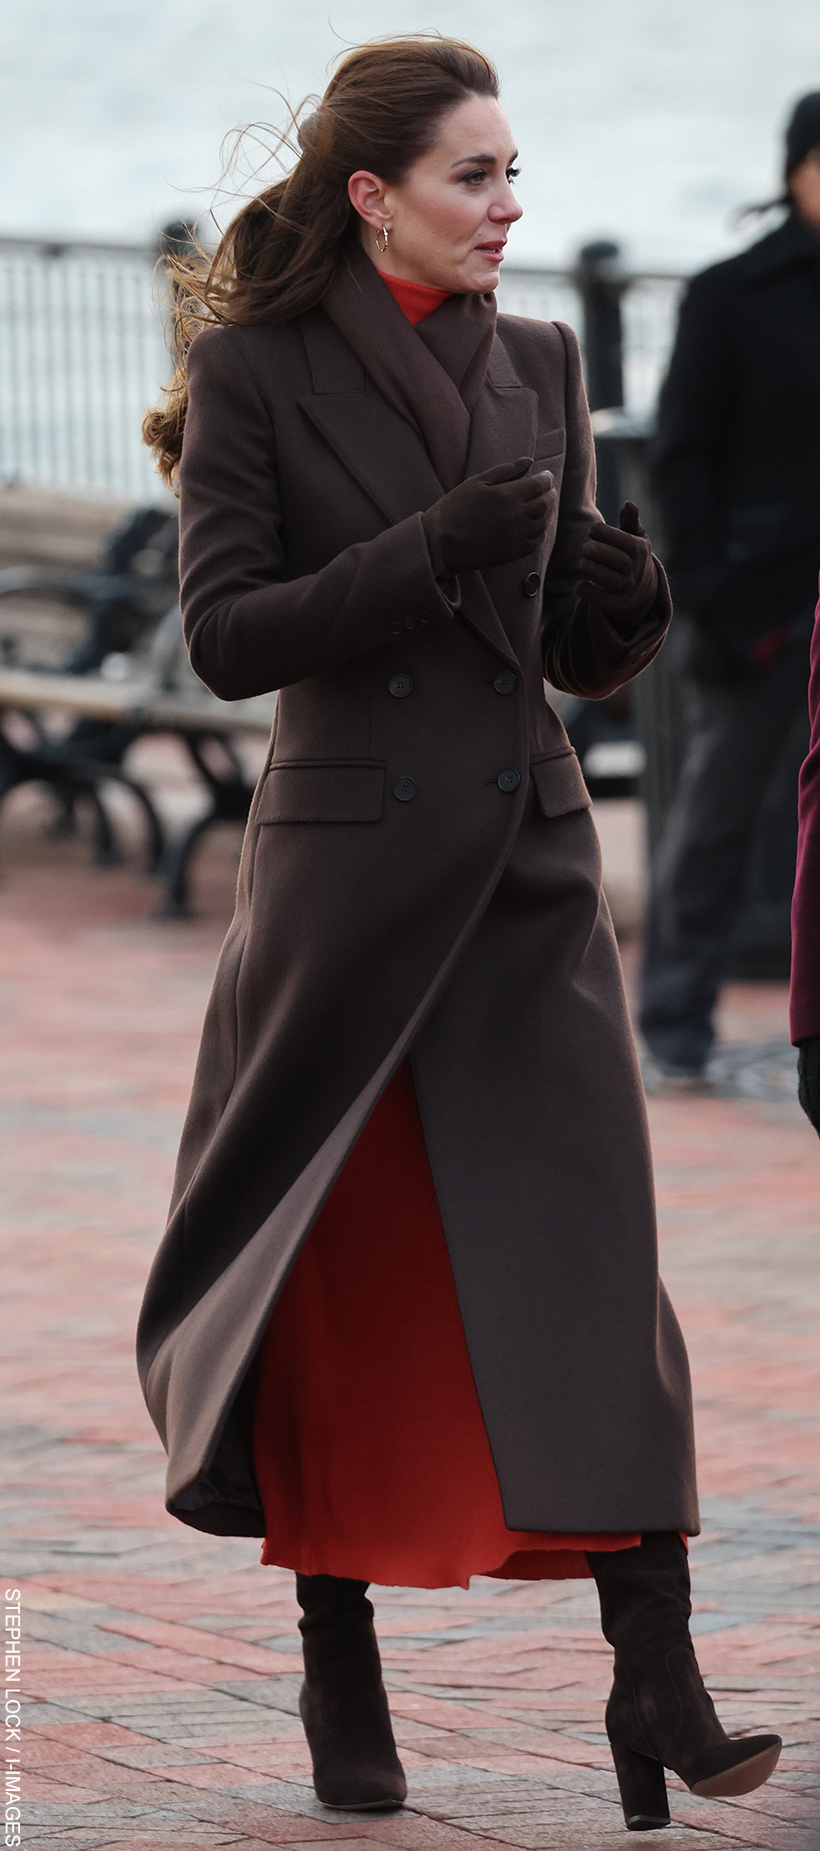 Kate Middleton's brown coat in Boston